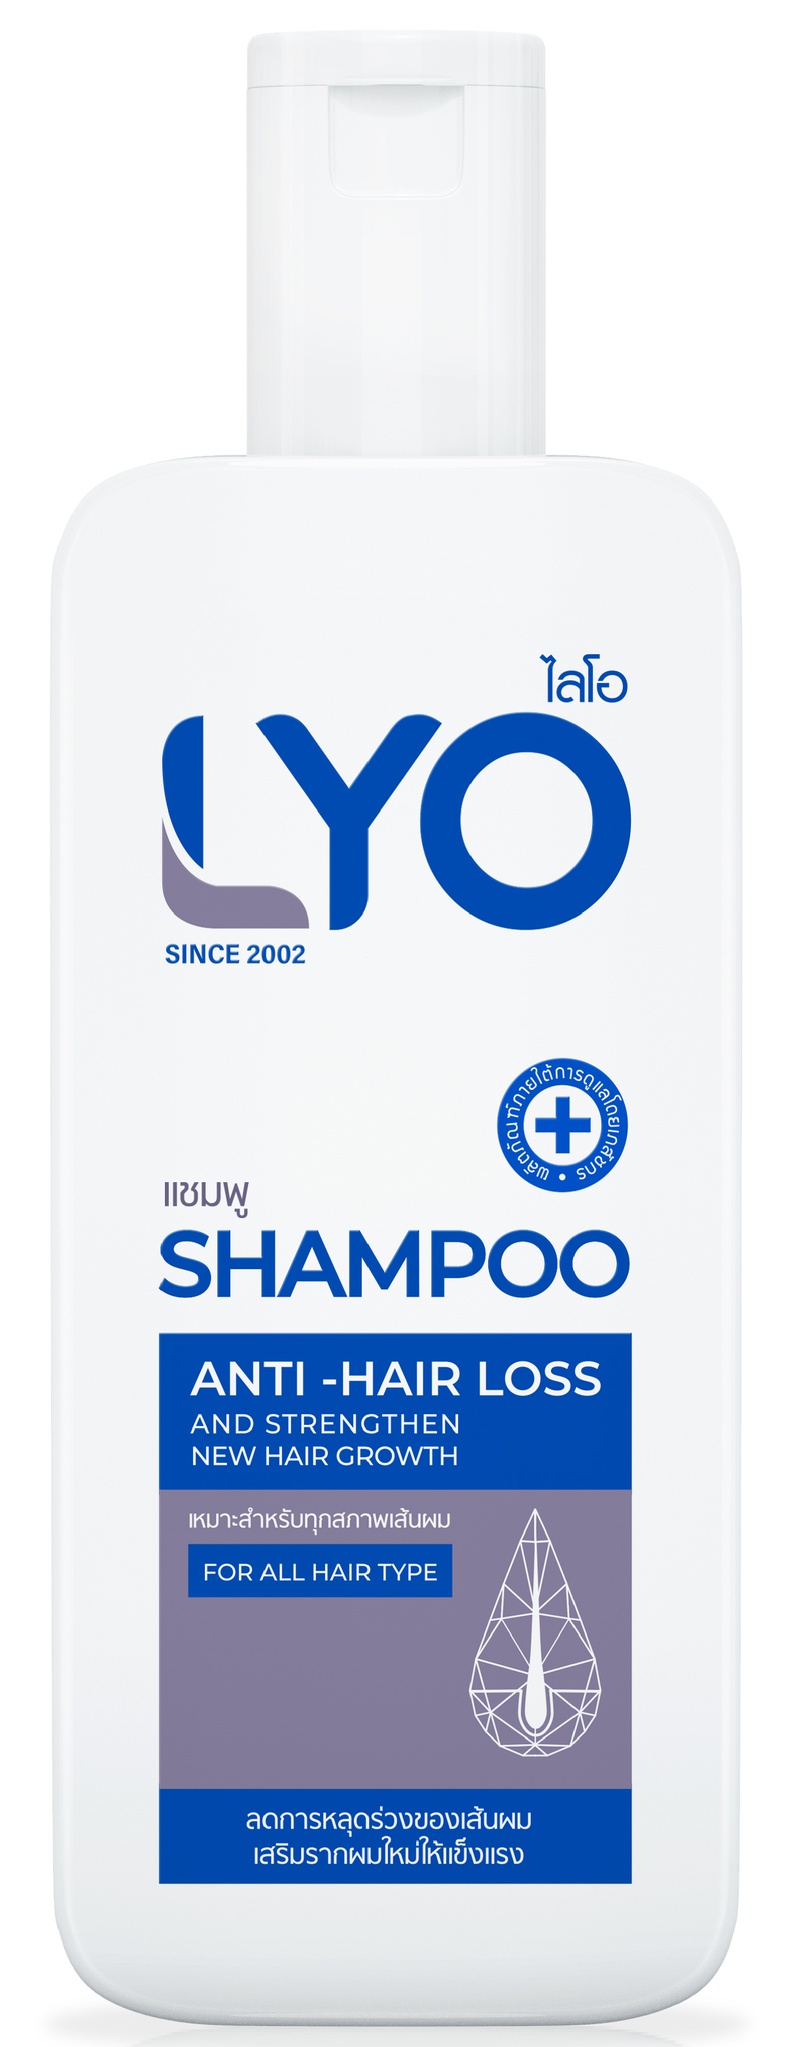 Lyo Shampoo